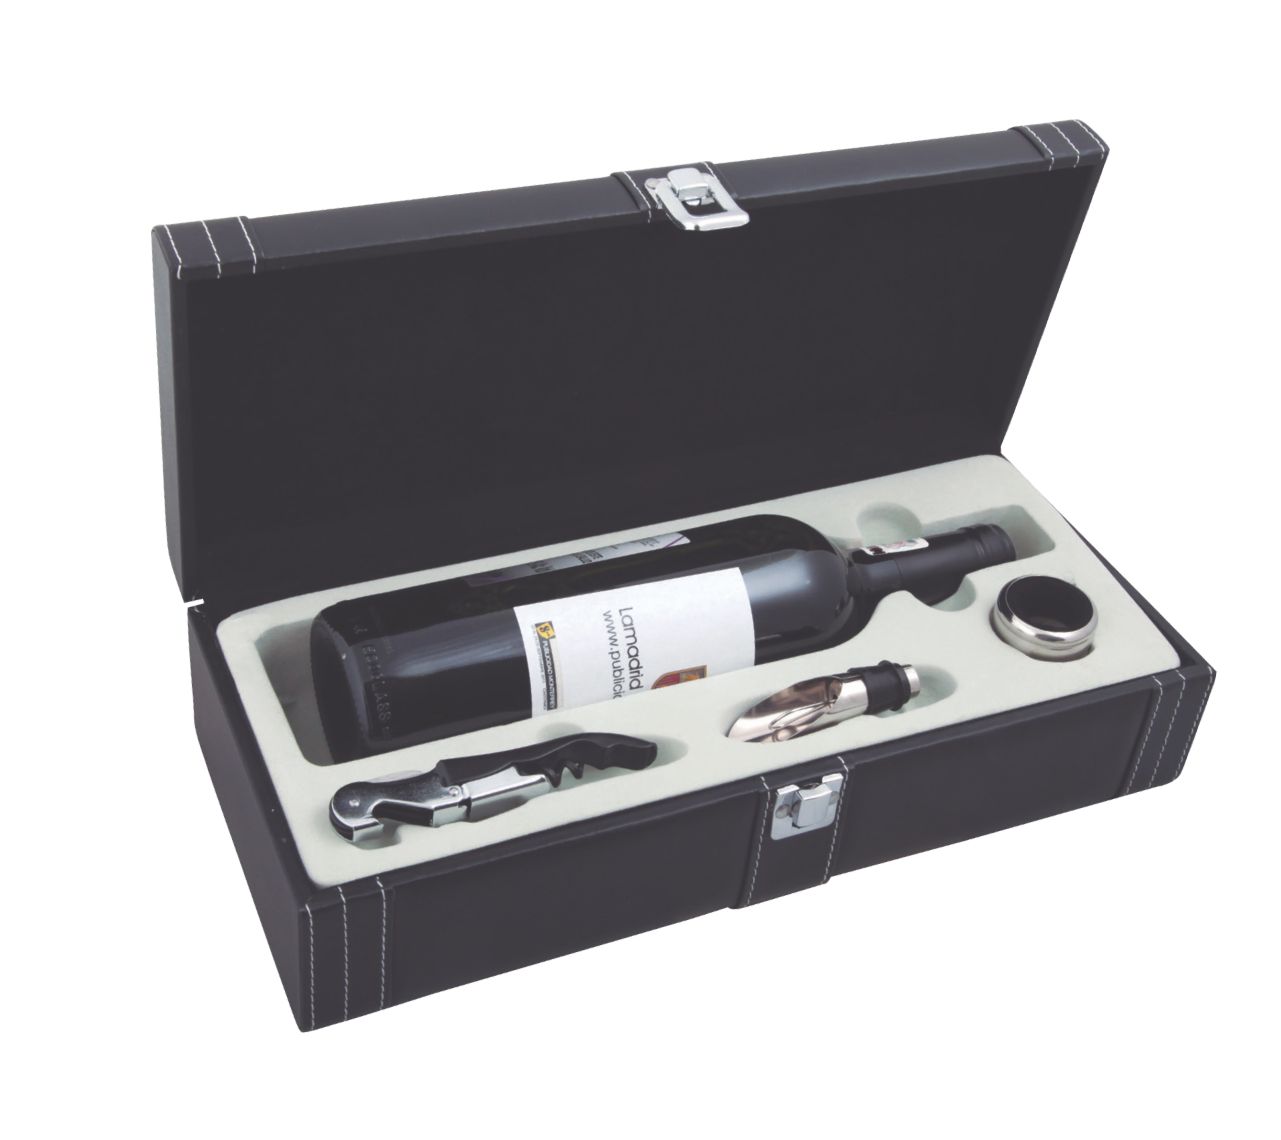 SET58, Set de accesorios para vino en estuche de curpiel (no incluye botella de vino)